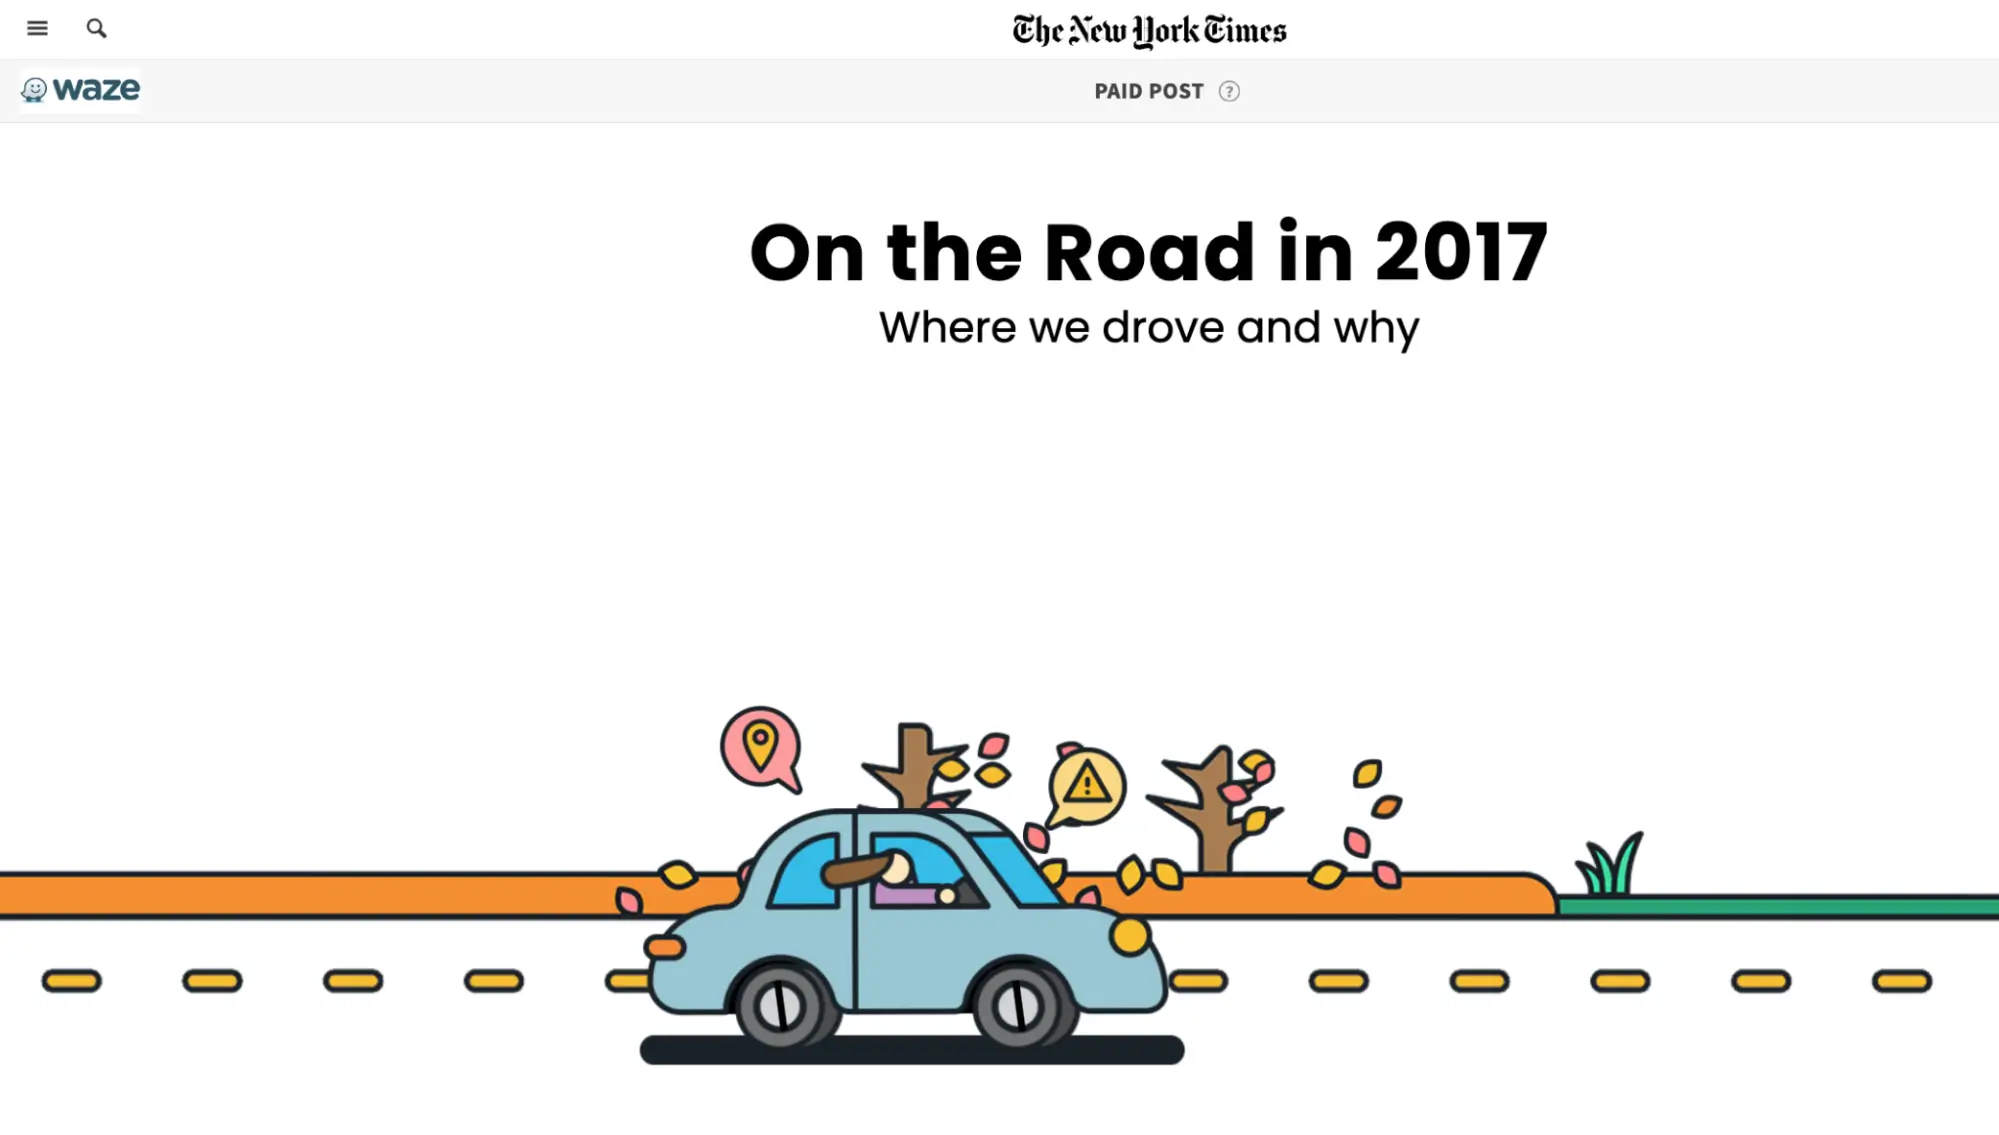 Bu resim, Waze'in New York Times ile ortaklaşa oluşturduğu ve gerçek uygulama verilerine dayanan etkileşimli içeriğe sahip "Yolda" kampanyasını göstermektedir. Kampanya, dikkat çekici grafiklere sahip interaktif bir sayfa aracılığıyla bilgilendirici ve paylaşılabilir içerik sunarak, sizi yönlendiren trendleri ve bunların arkasındaki nedenleri ortaya çıkarmayı amaçladı.